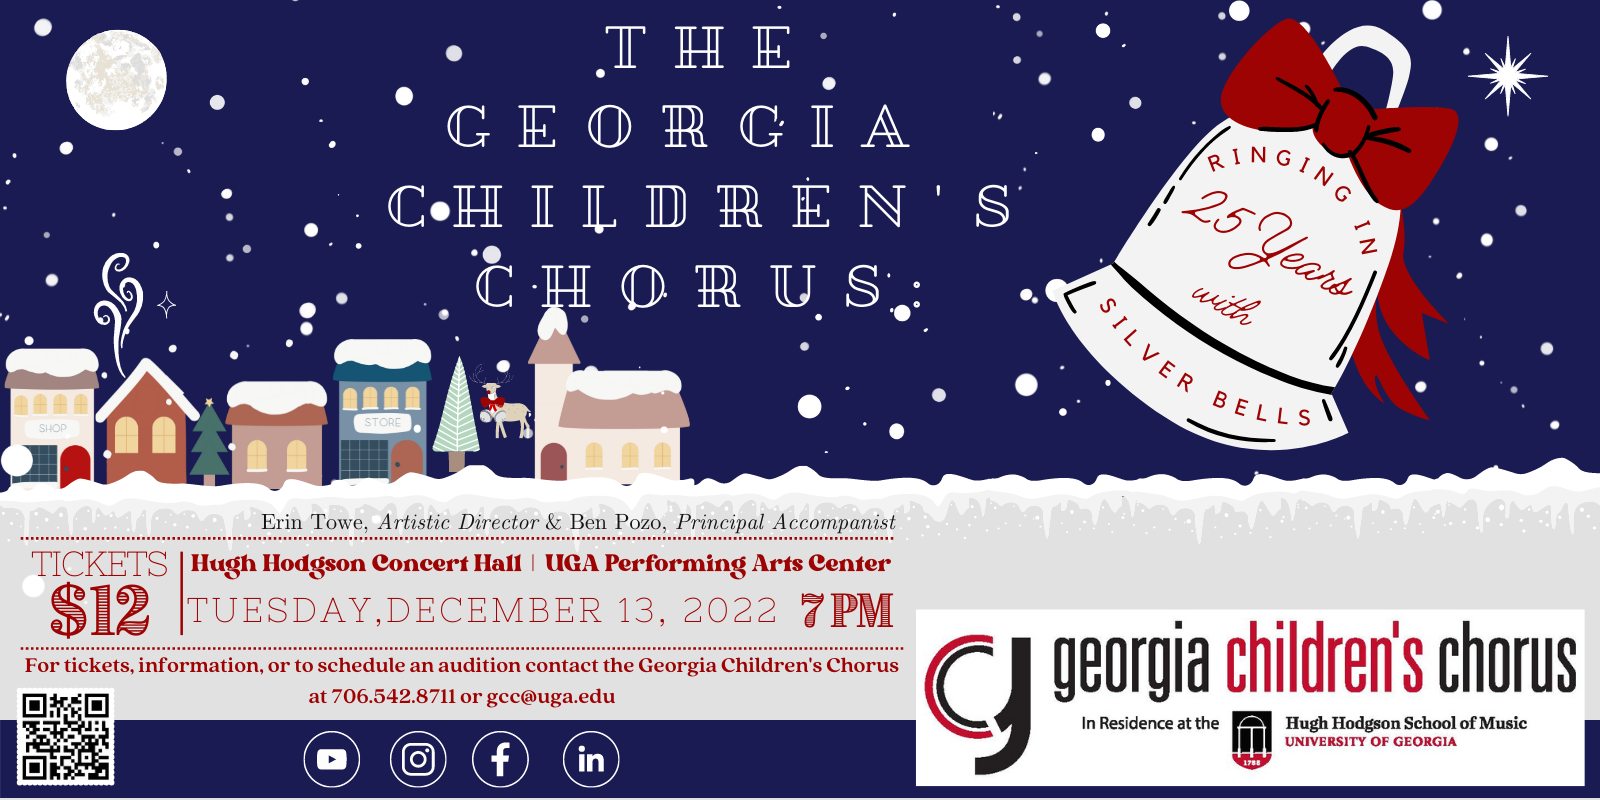 Georgia Children’s Chorus: Ringing in 25 Years with GCC